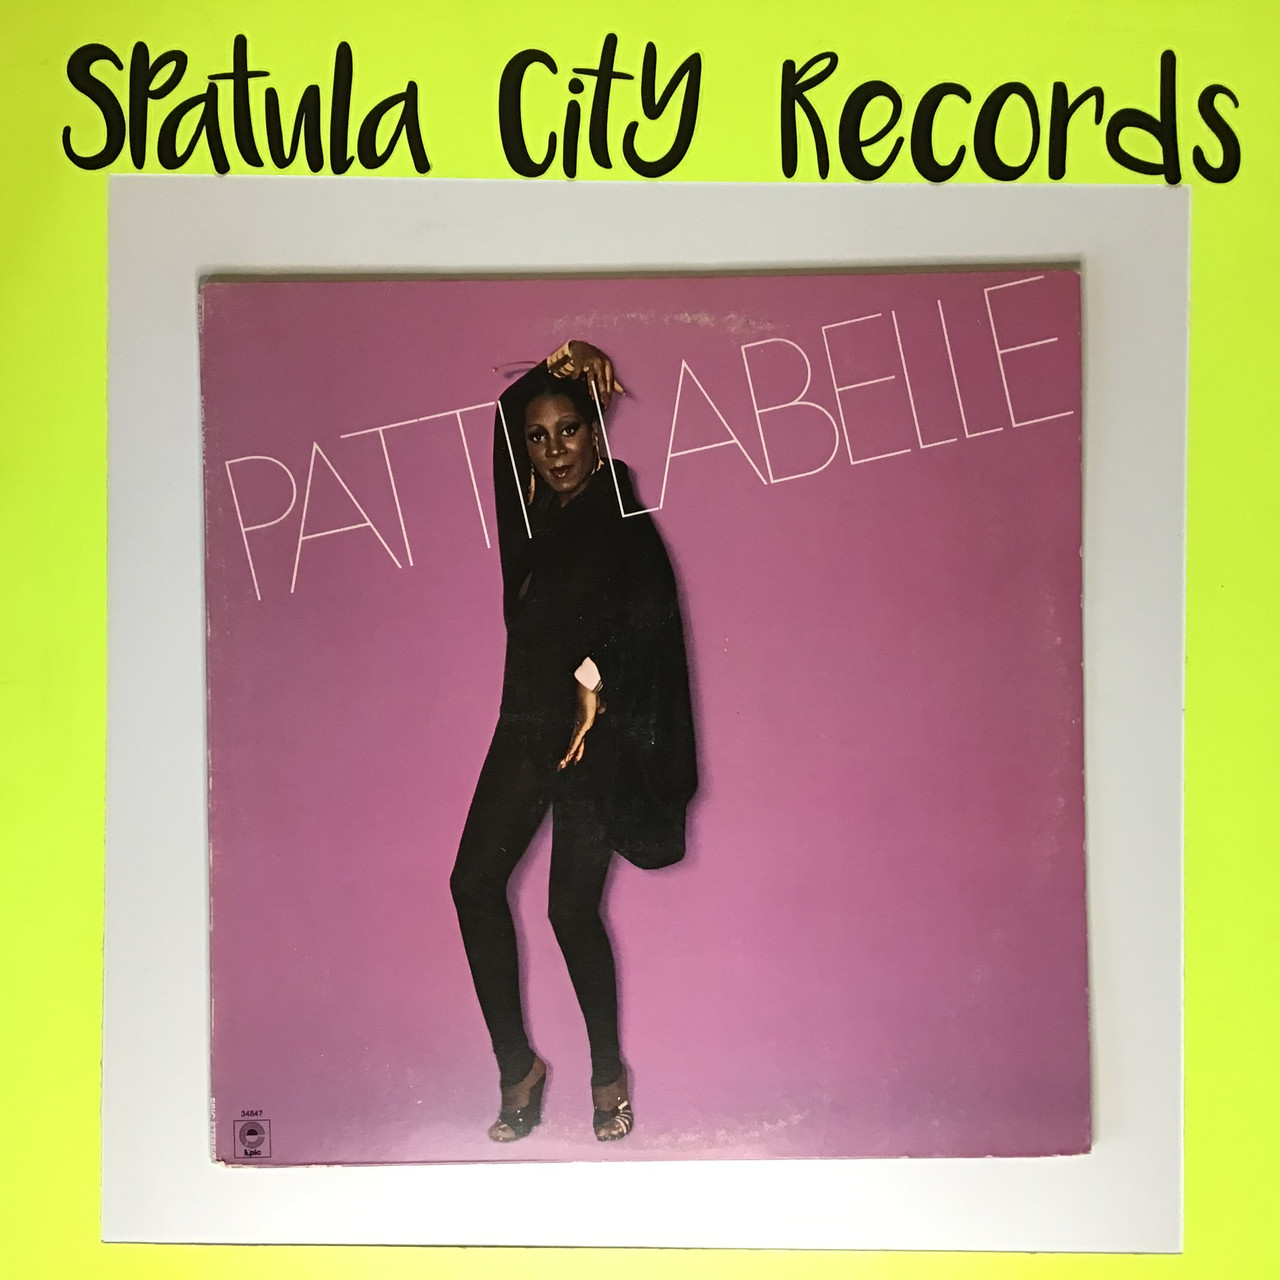 Patti Labelle - Patti Labelle self-titled  - Vinyl Record album LP